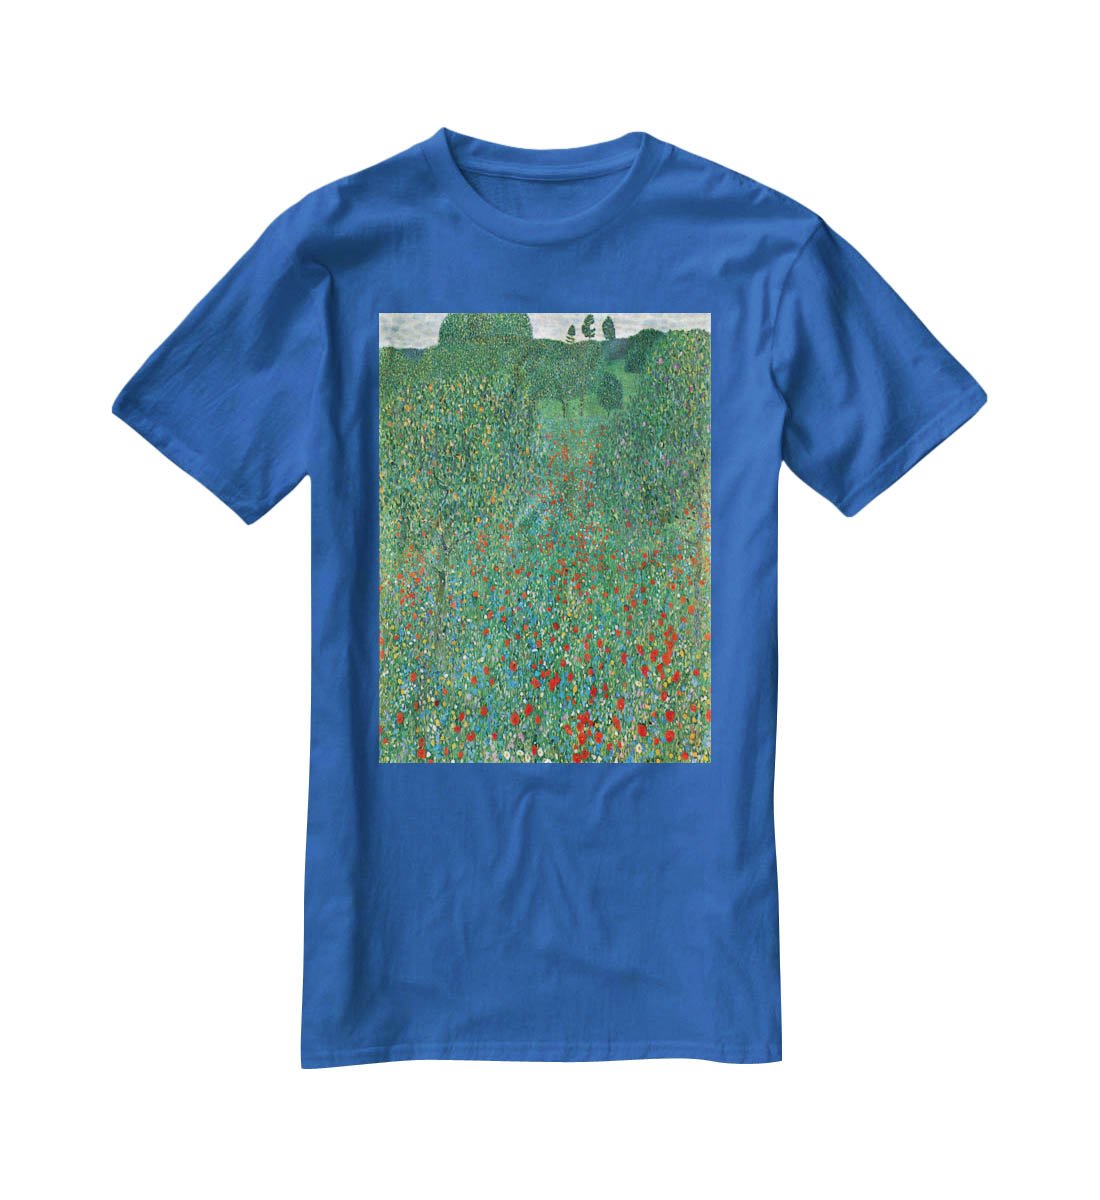 Poppy Field by Klimt T-Shirt - Canvas Art Rocks - 2